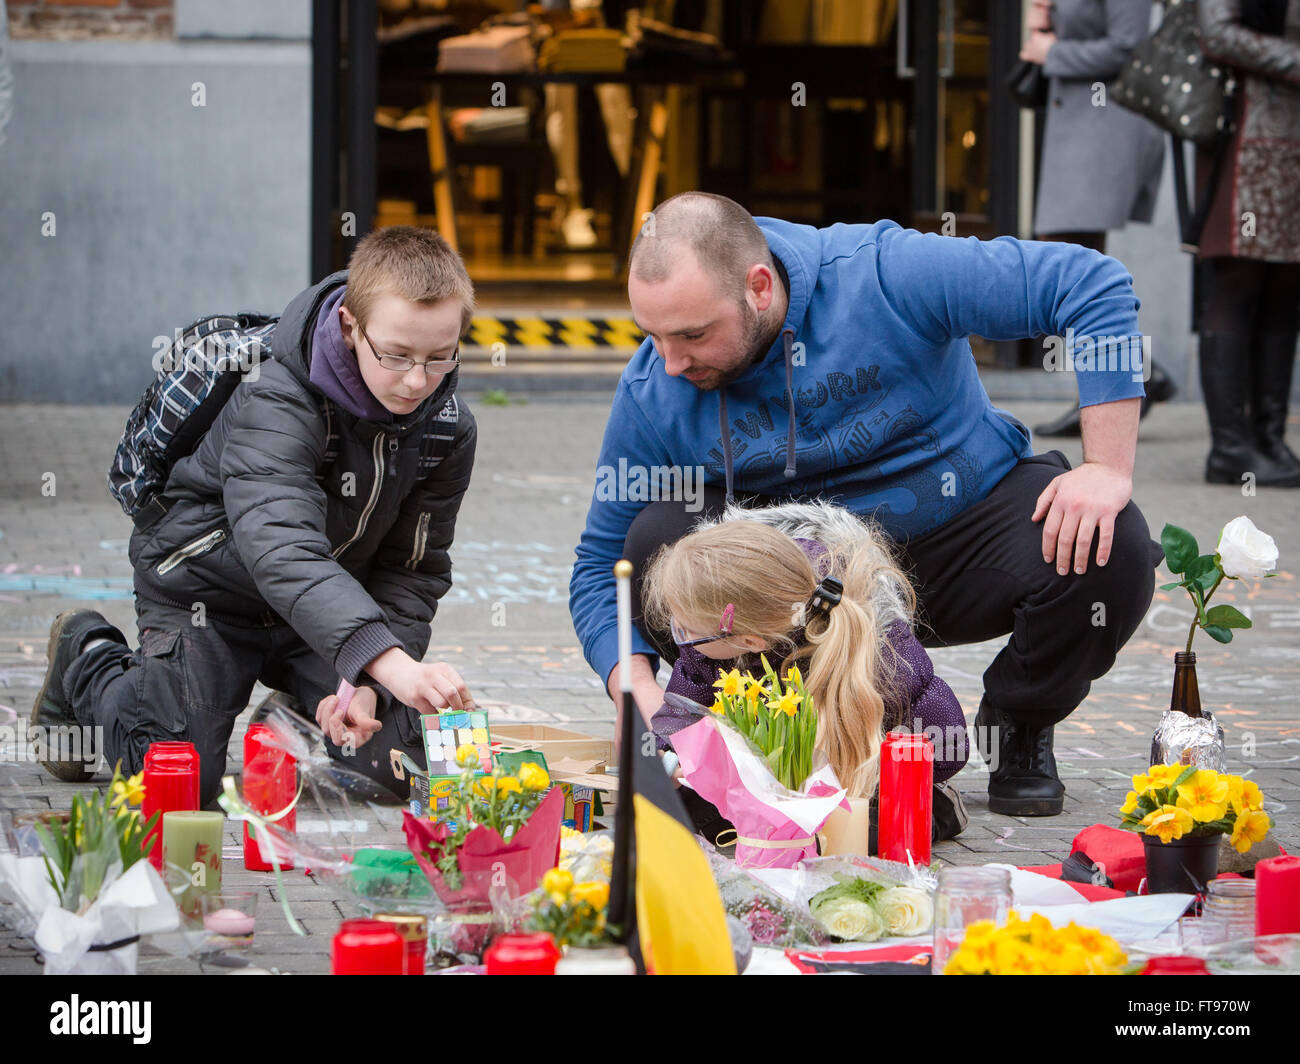 Namur, Bélgica. 25 Mar, 2016. Un chico y una chica joven dejar un mensaje durante el homenaje a las víctimas de los ataques terroristas del 22 de marzo en Bruselas en Namur, Bélgica. Crédito: Frédéric de Laminne/Alamy Live News Foto de stock